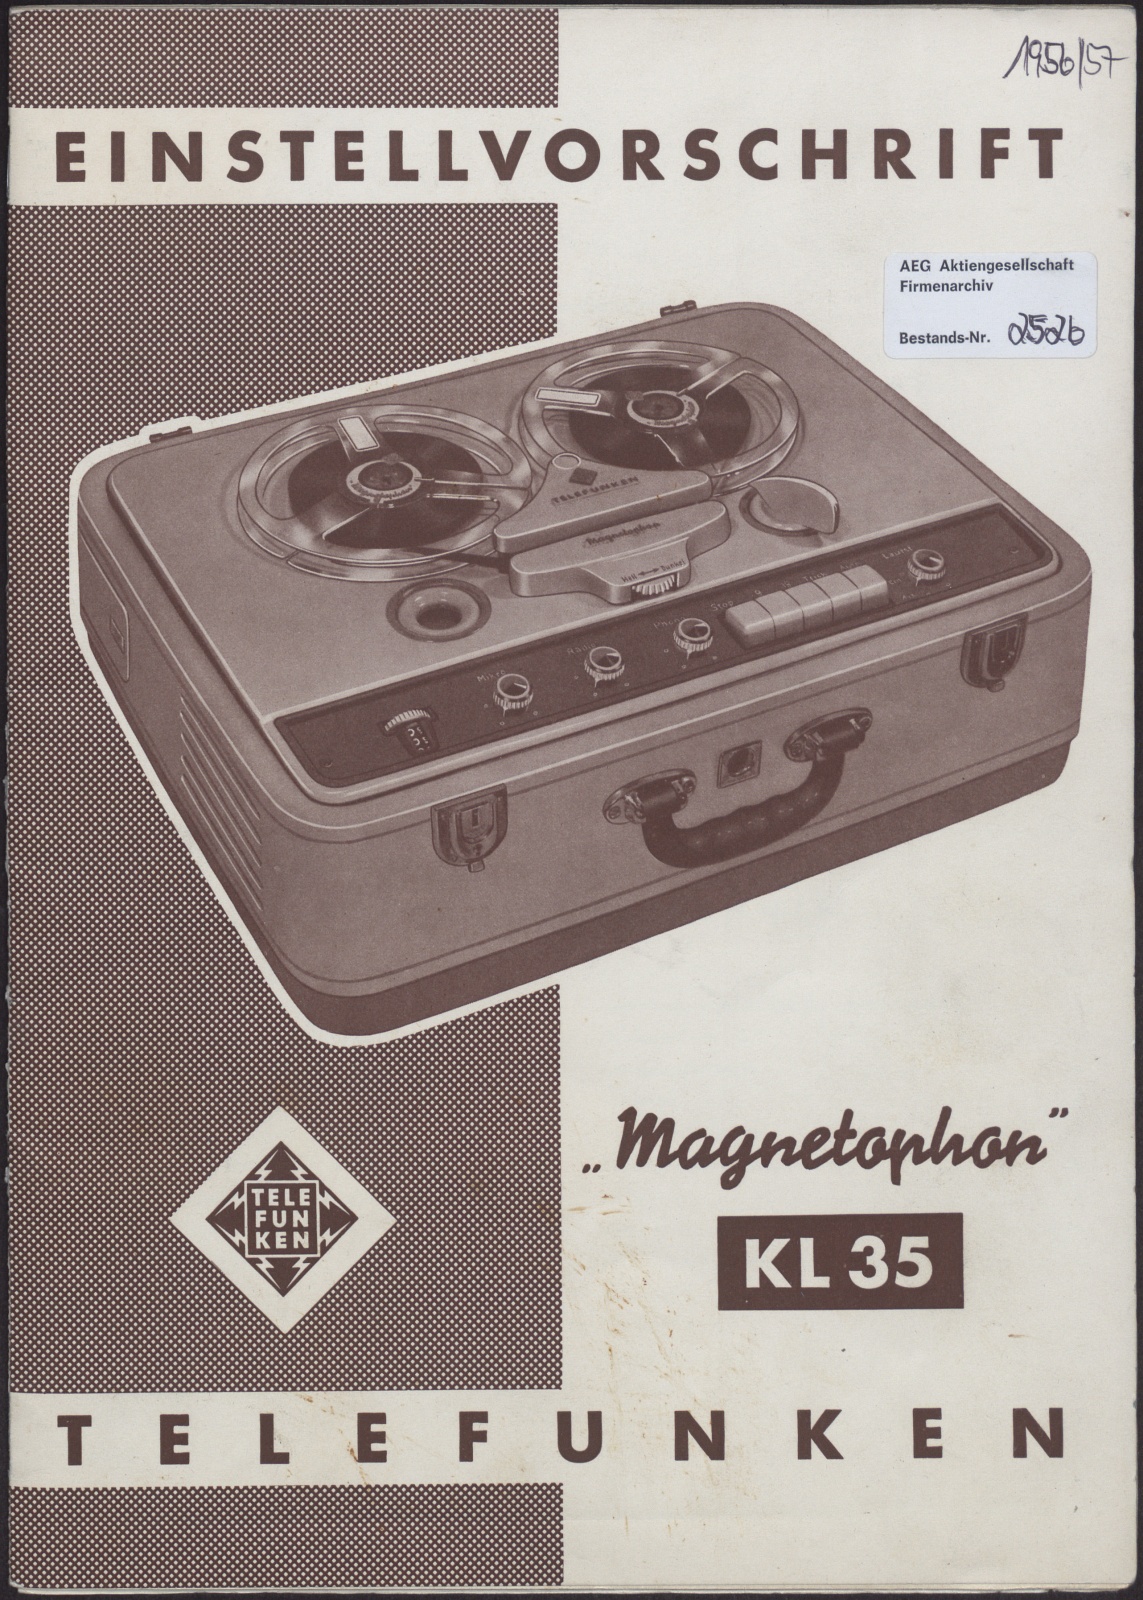 Bedienungsanleitung: Einstellvorschrift Telefunken Magnetophon KL35 (Stiftung Deutsches Technikmuseum Berlin CC0)